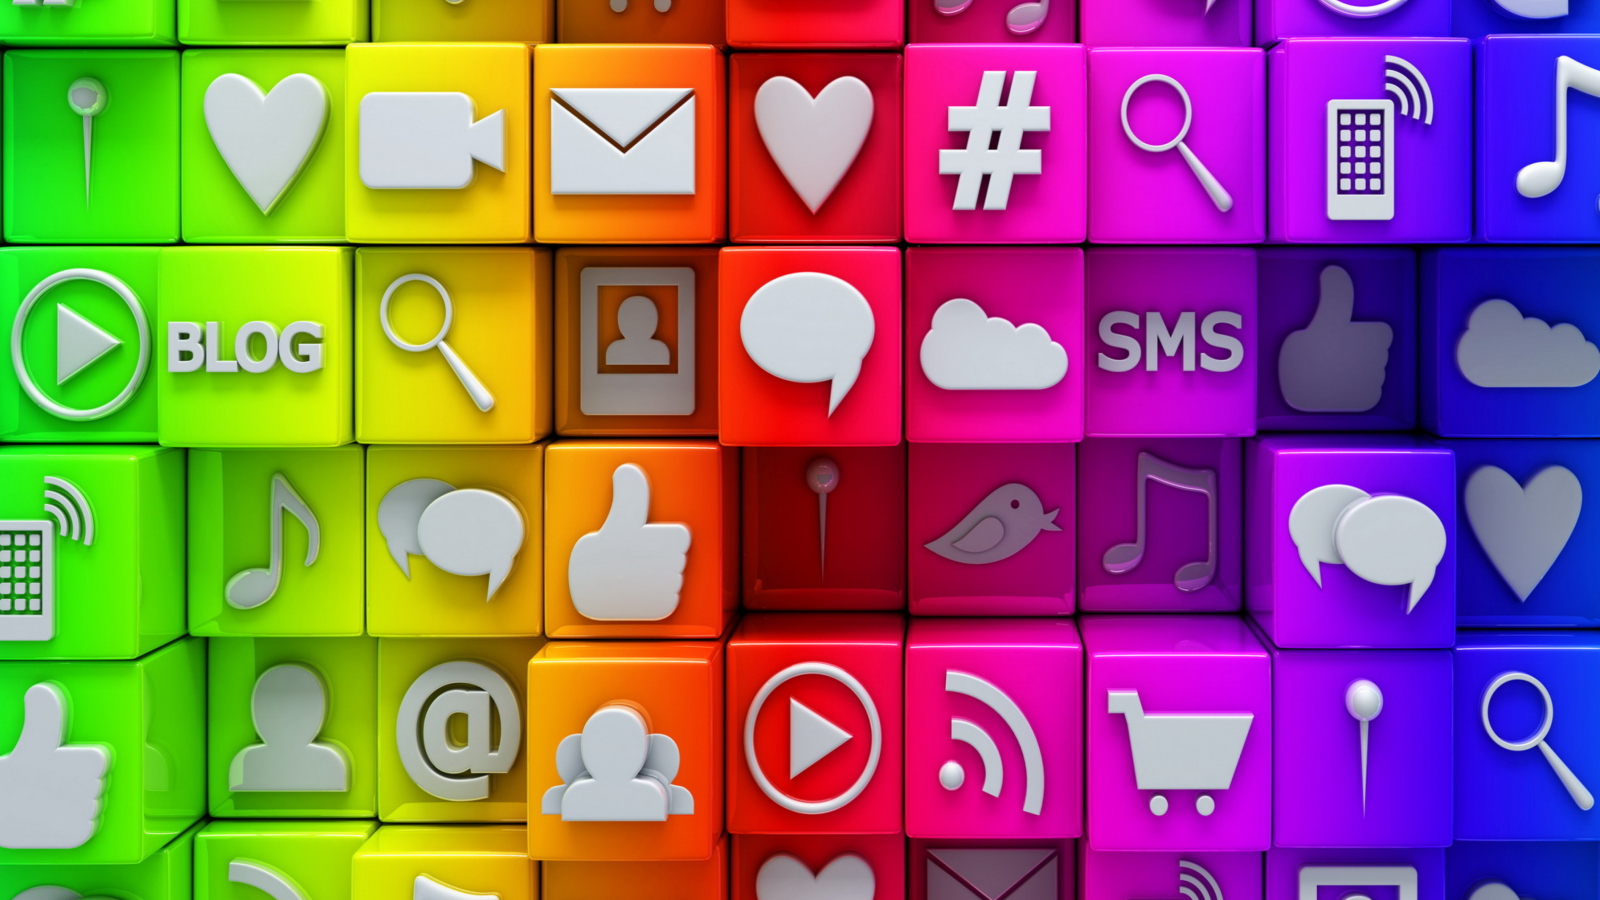 Sfondi Social  Media Icons: SMS, Blog 1600x900